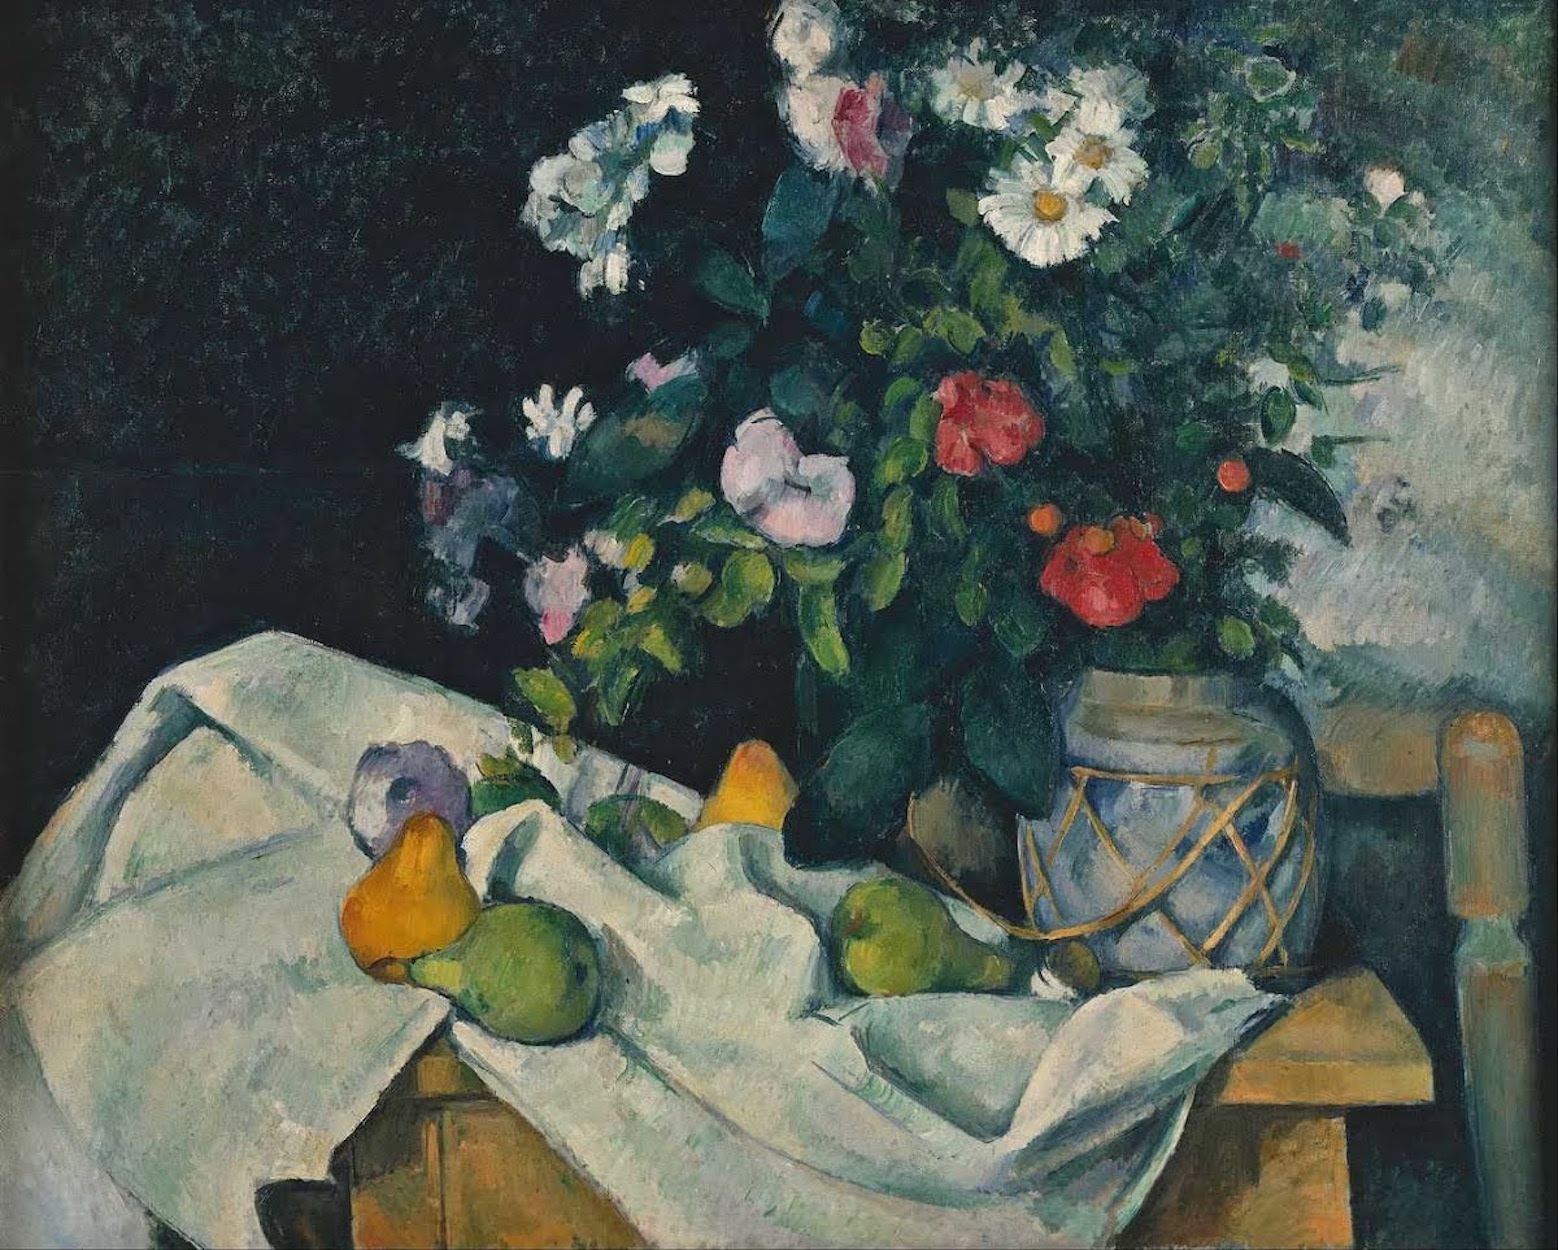 花果靜物 by Paul Cézanne - 約 1890 年 - 82.0 x 65.5 釐米 